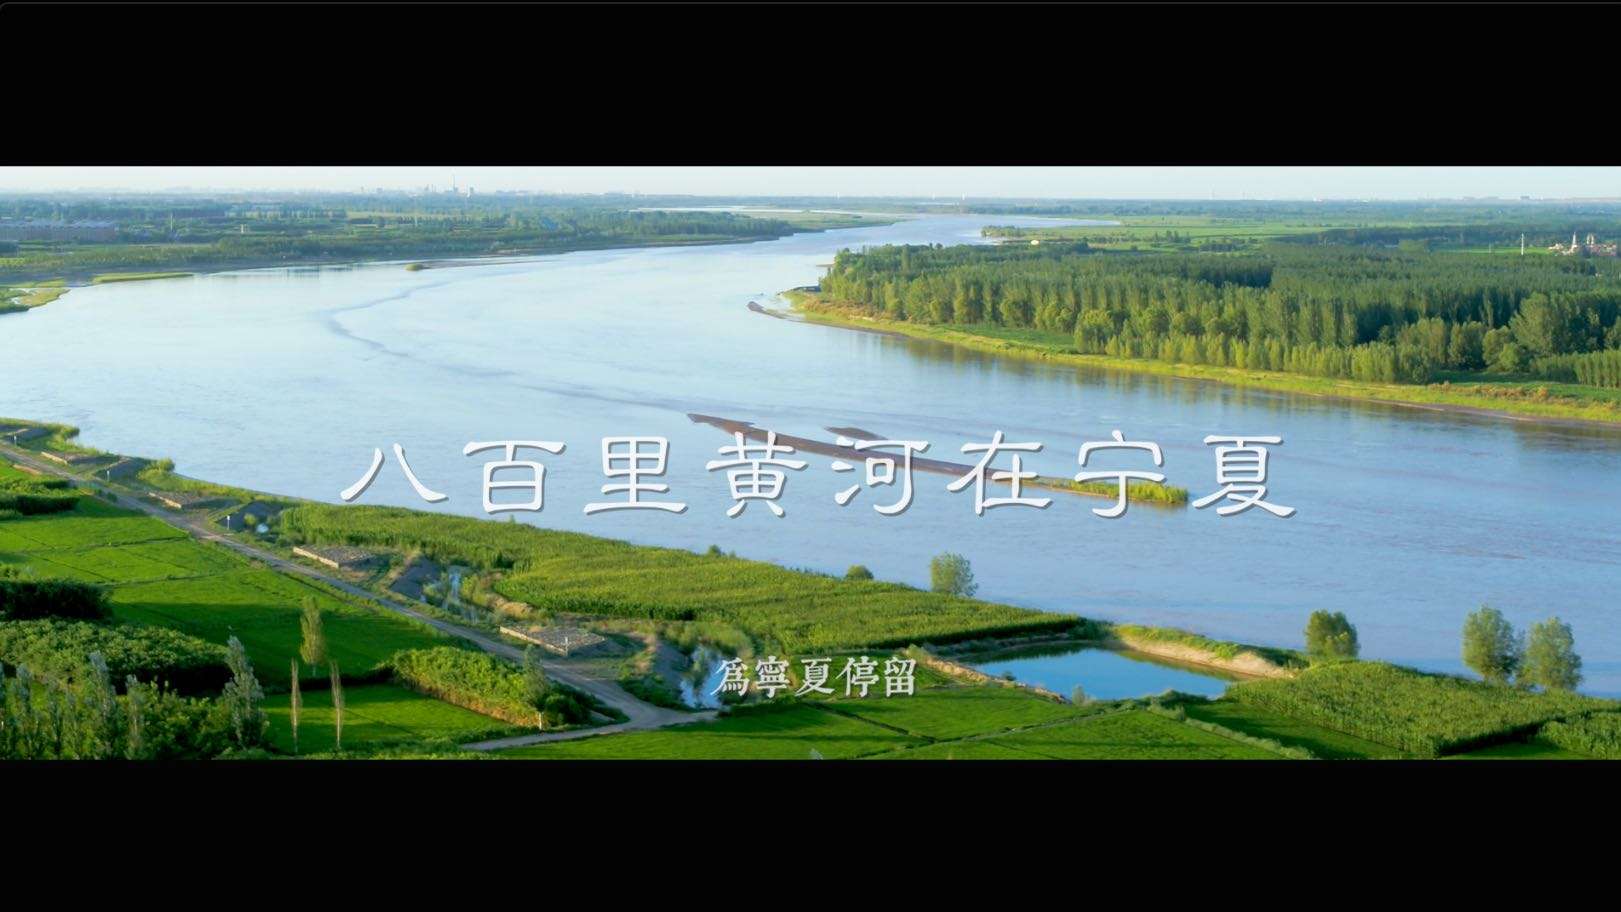 八百里黄河在宁夏